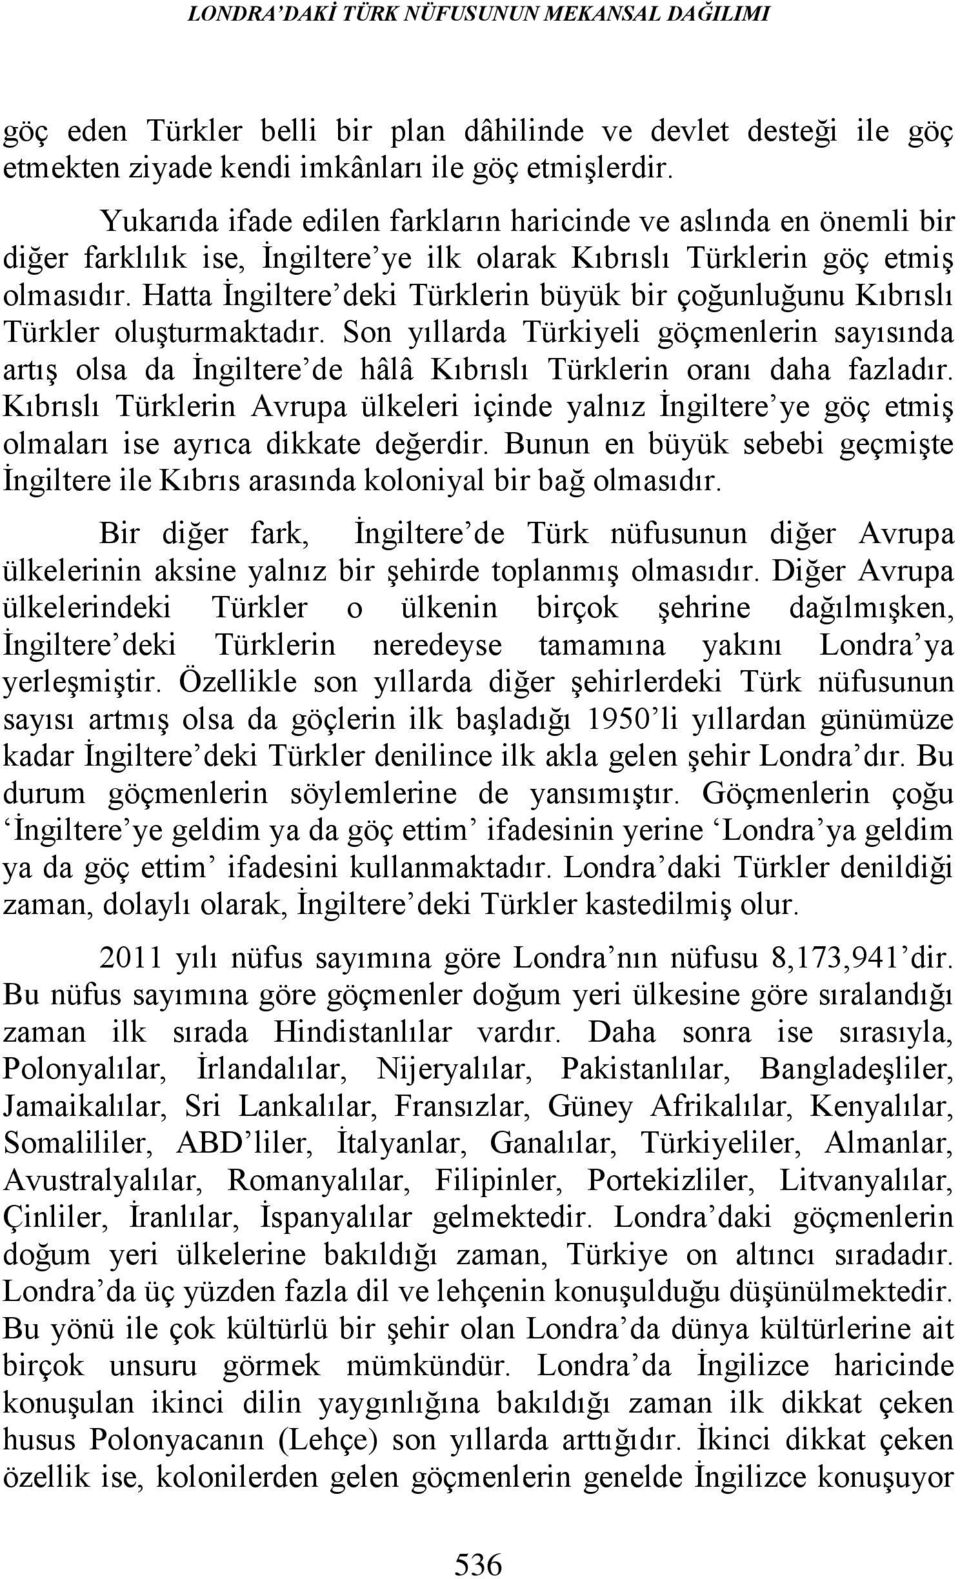 Hatta İngiltere deki Türklerin büyük bir çoğunluğunu Kıbrıslı Türkler oluşturmaktadır.